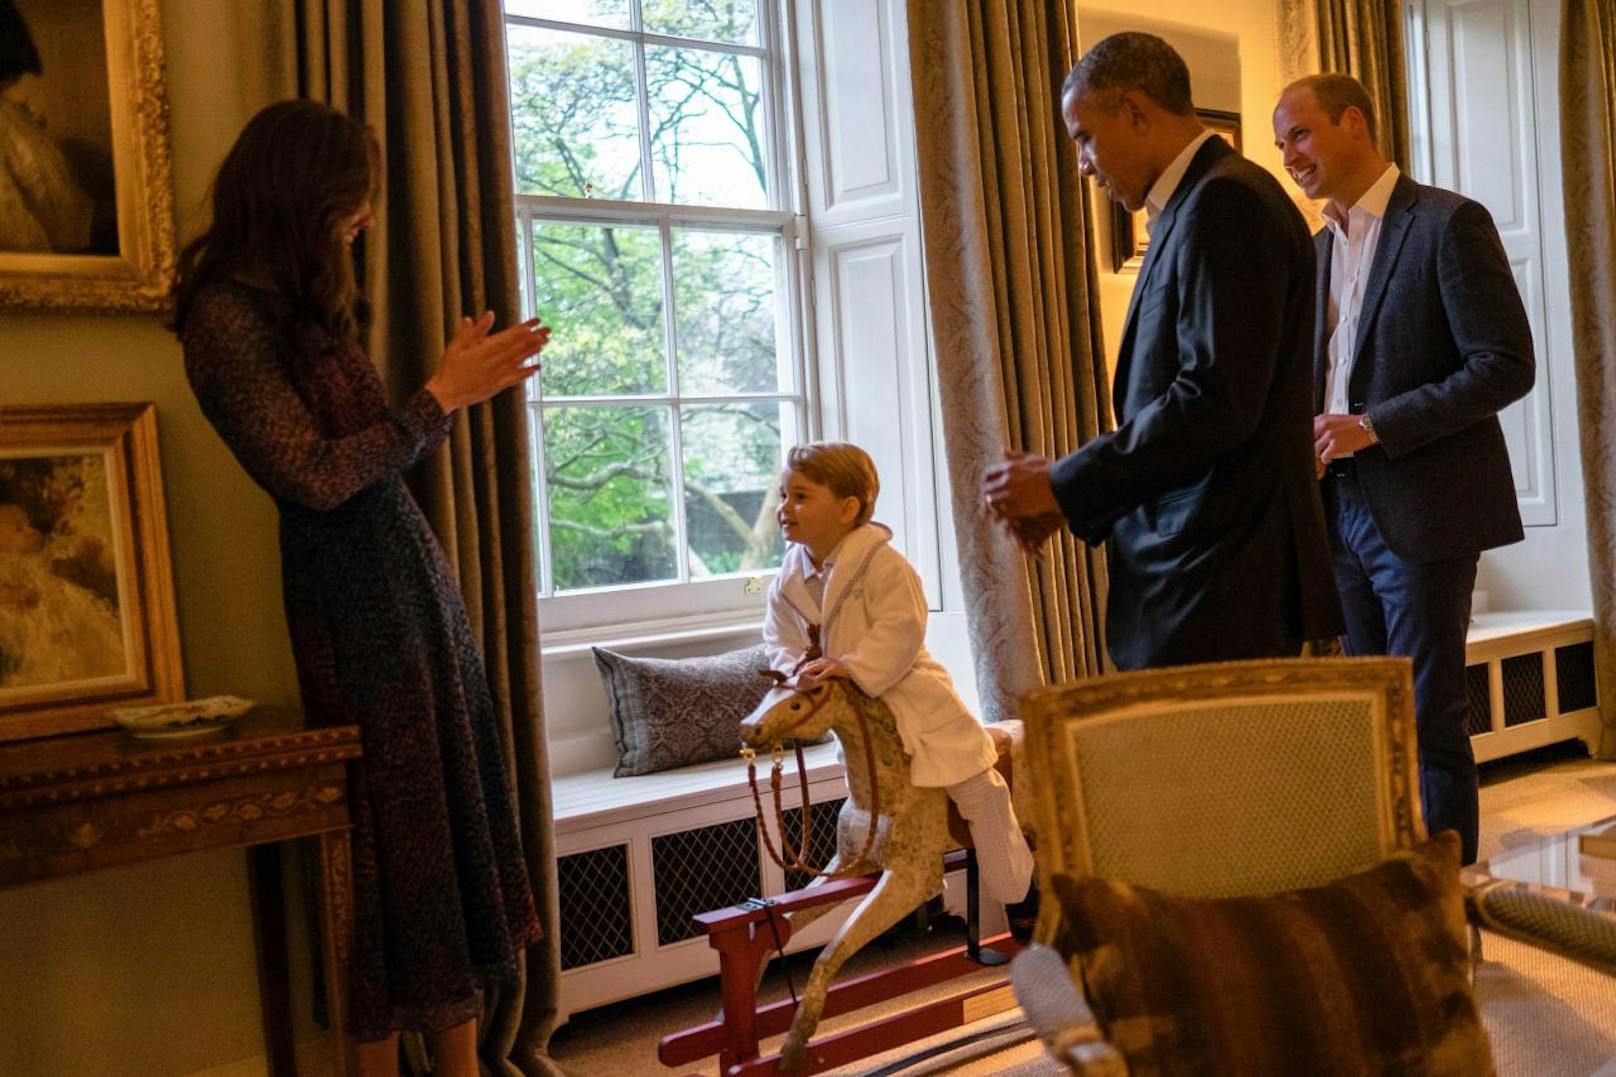 Früh übt sich: Der kleine Prinz George - immerhin Nummer 3 in der britischen Thronfolge - muss derweil noch mit einem Holzpferd Vorlieb nehmen. Die royalen Eltern Herzogin Kate und Prinz William (r.) sowie US-Präsident Barack Obama (M.) sind trotzdem beeindruckt.